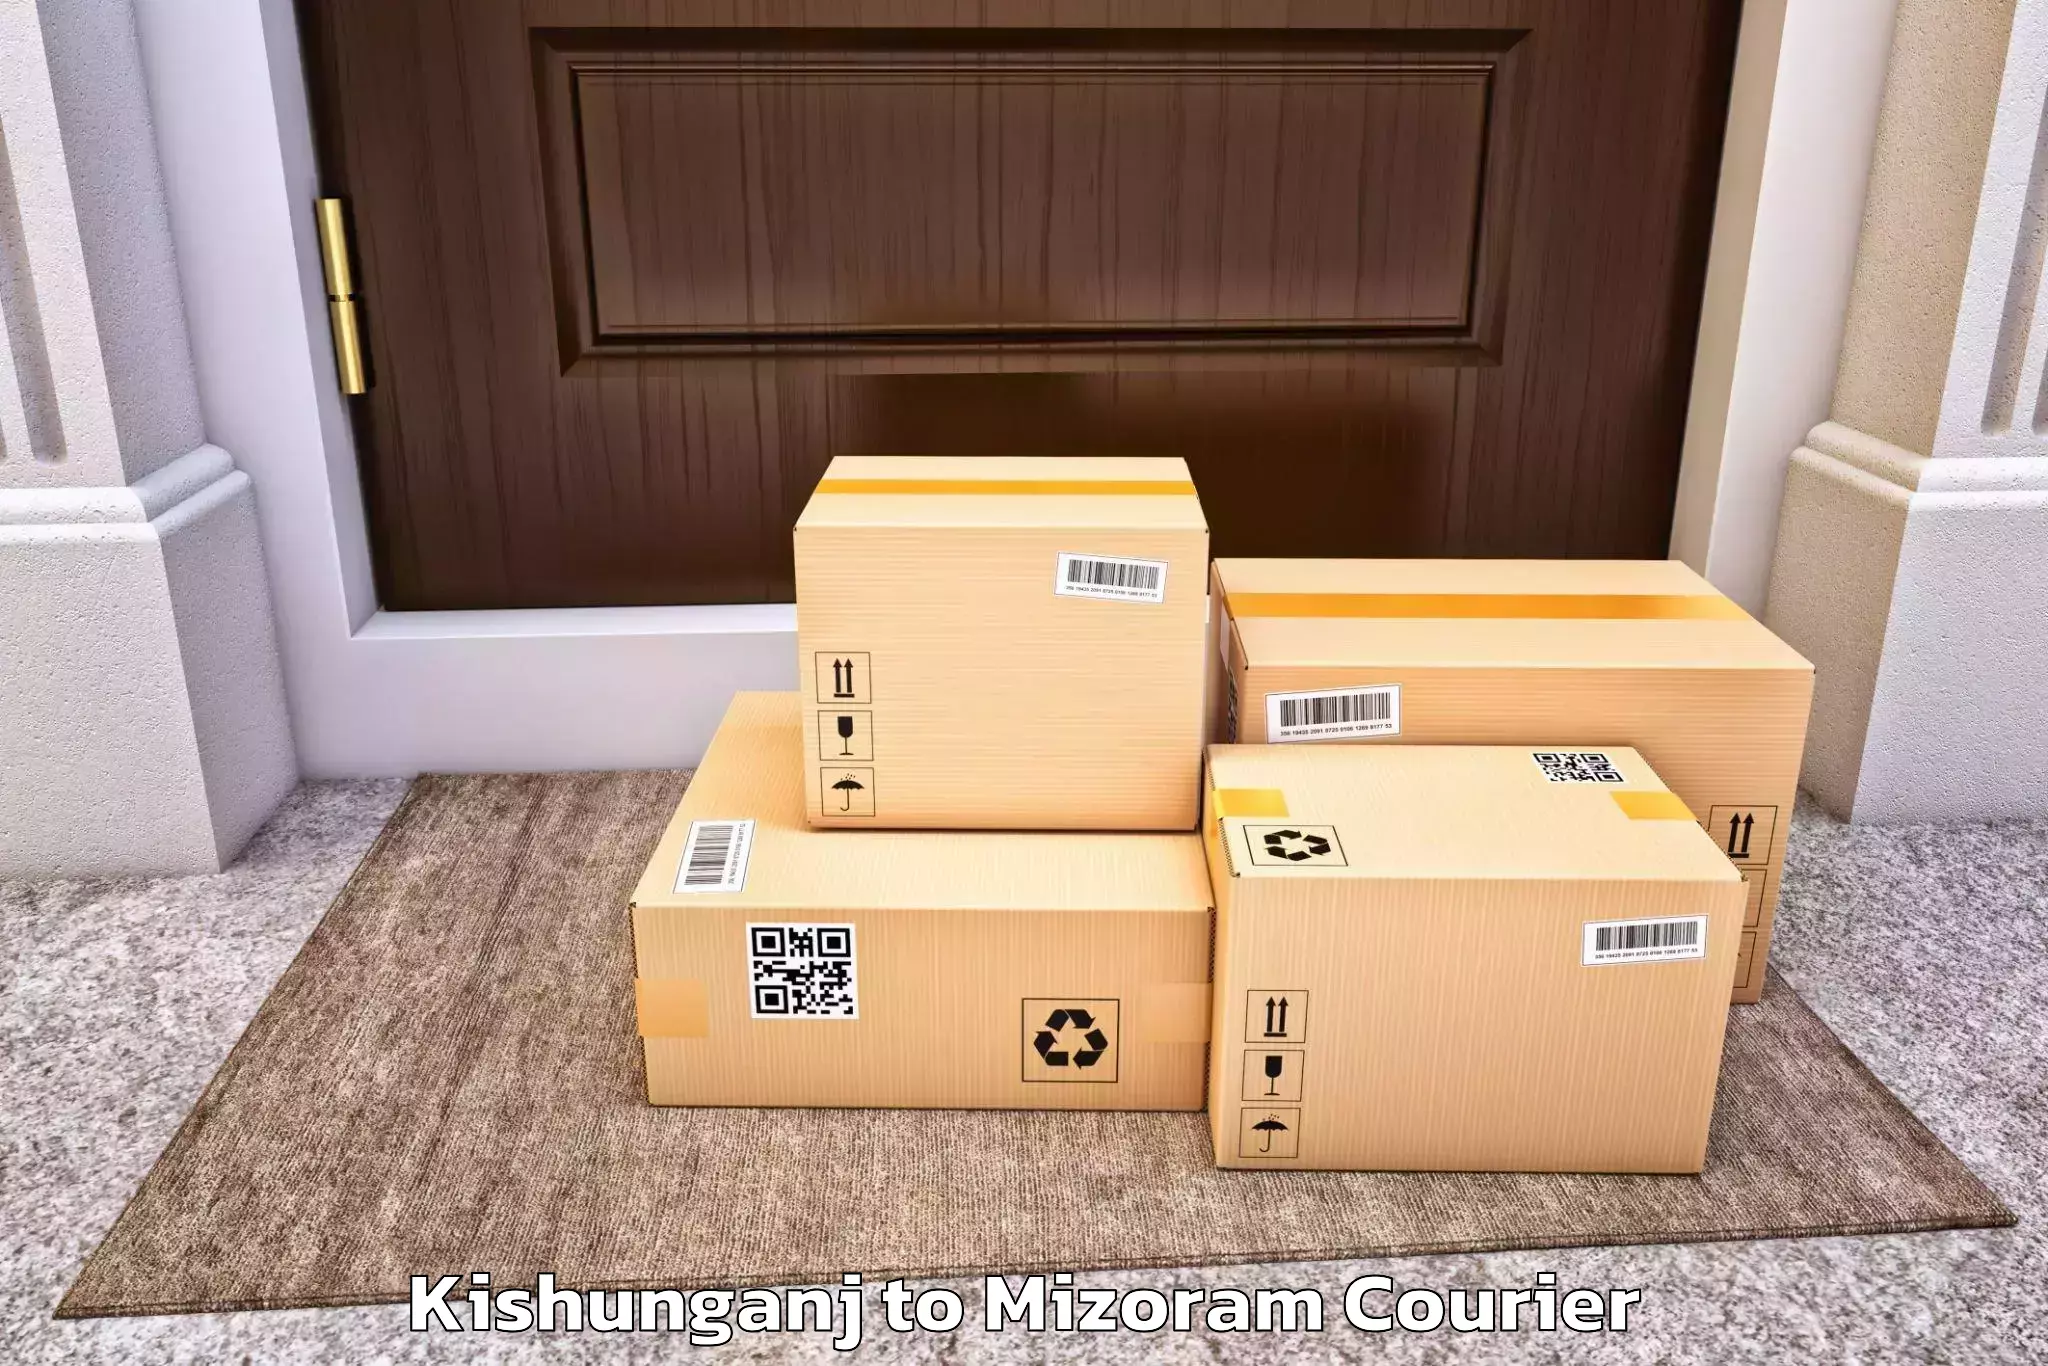 Premium moving services Kishunganj to Mizoram